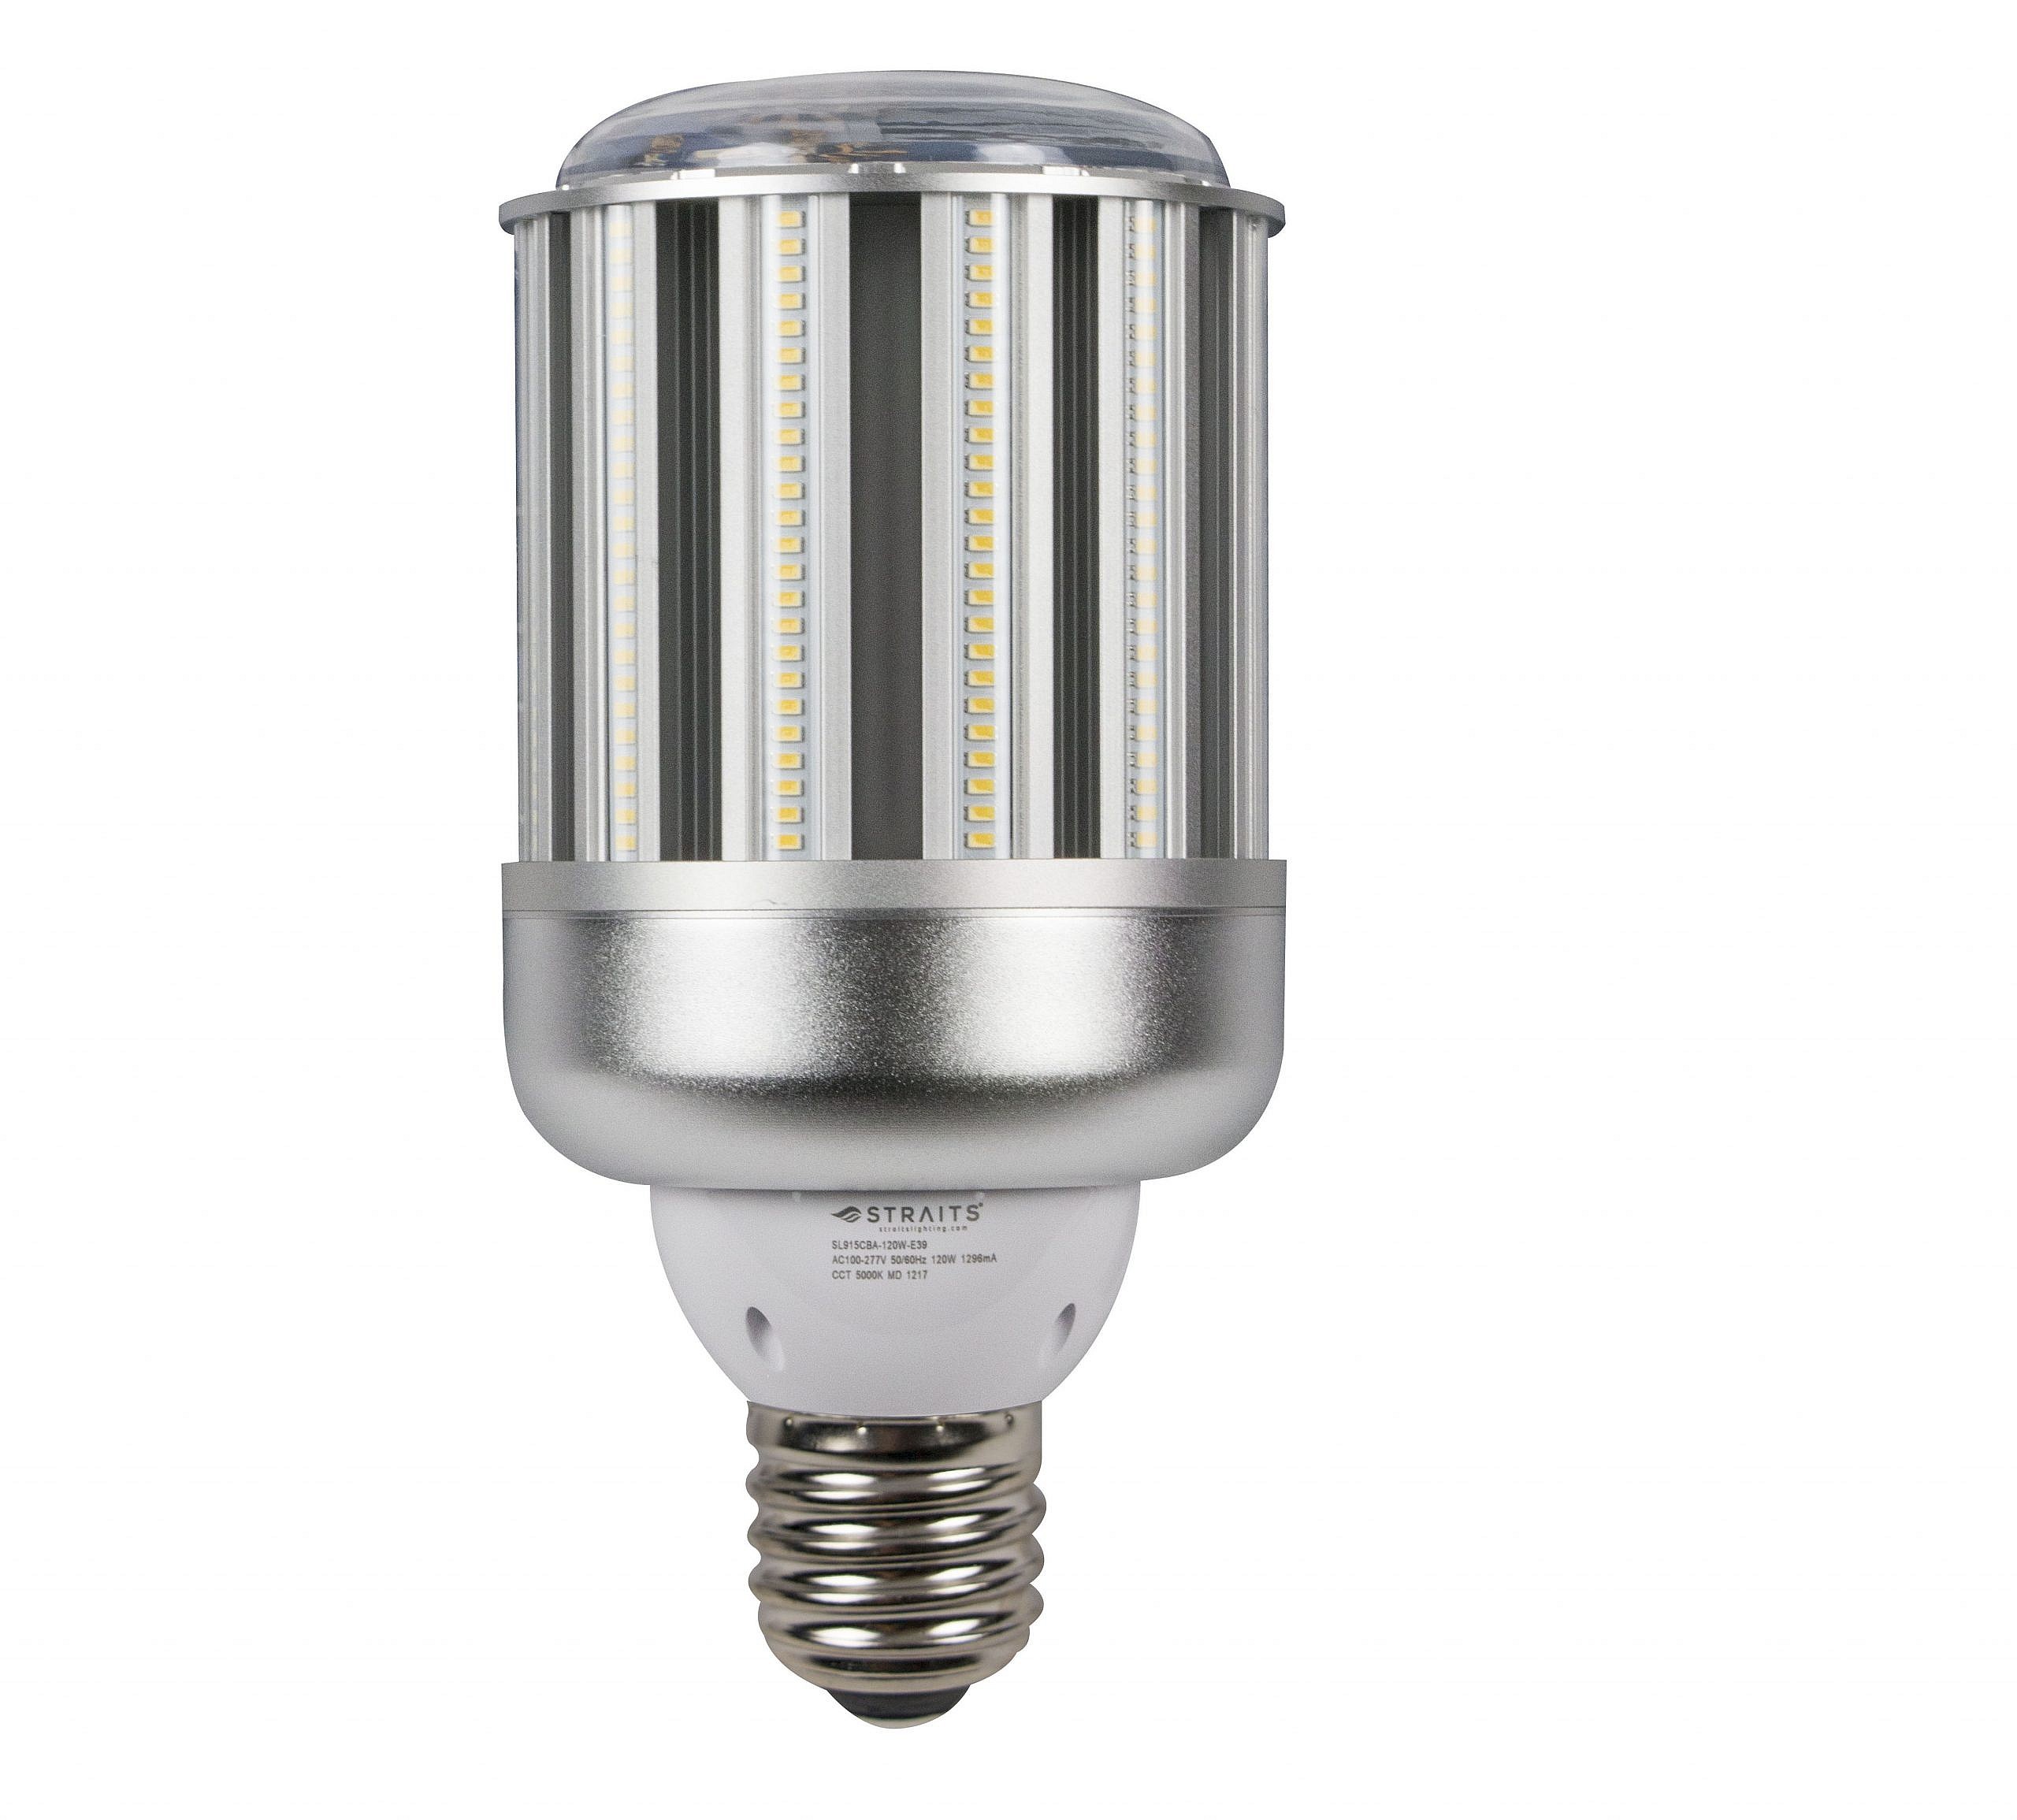 LED Corn Bulb | Industrial LED Lighting | Straits® Lighting